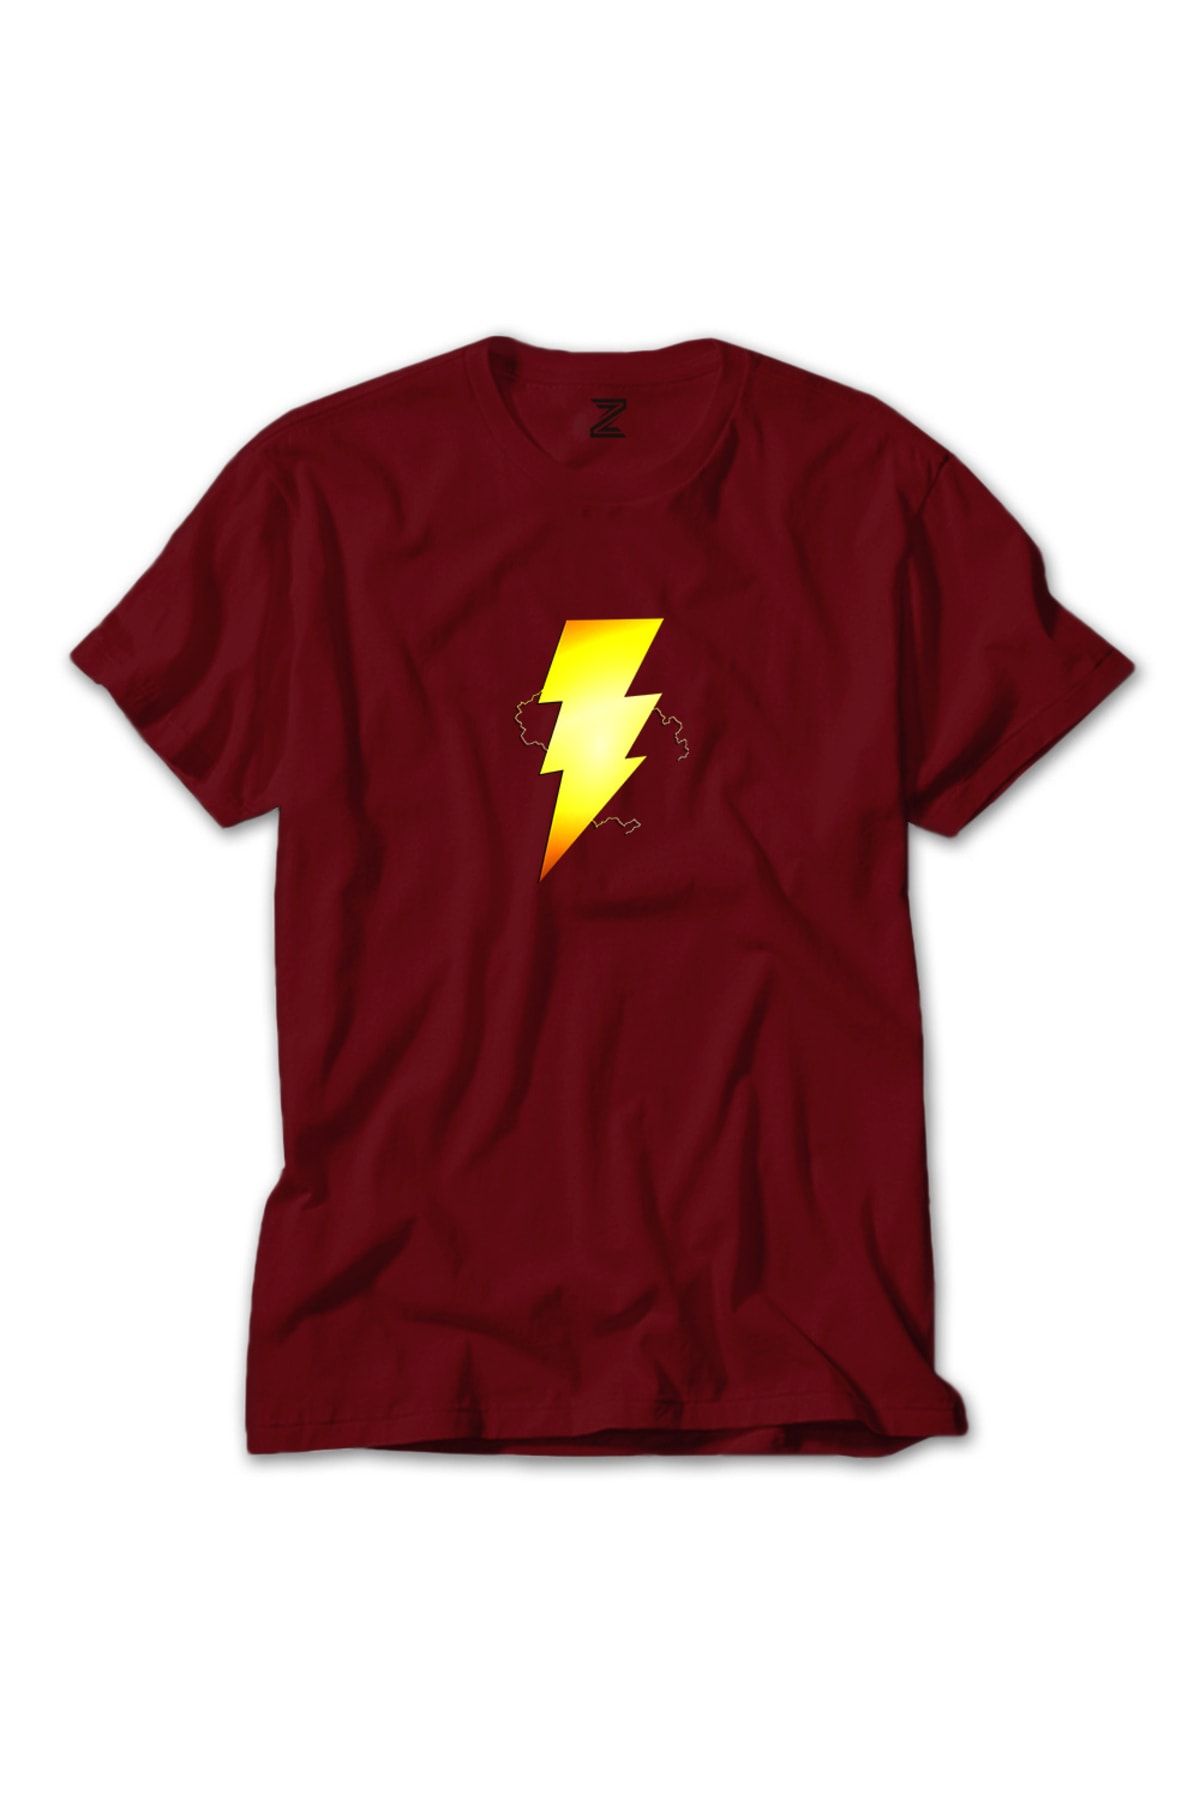 Z zepplin Shazam Logo Kırmızı Tişört